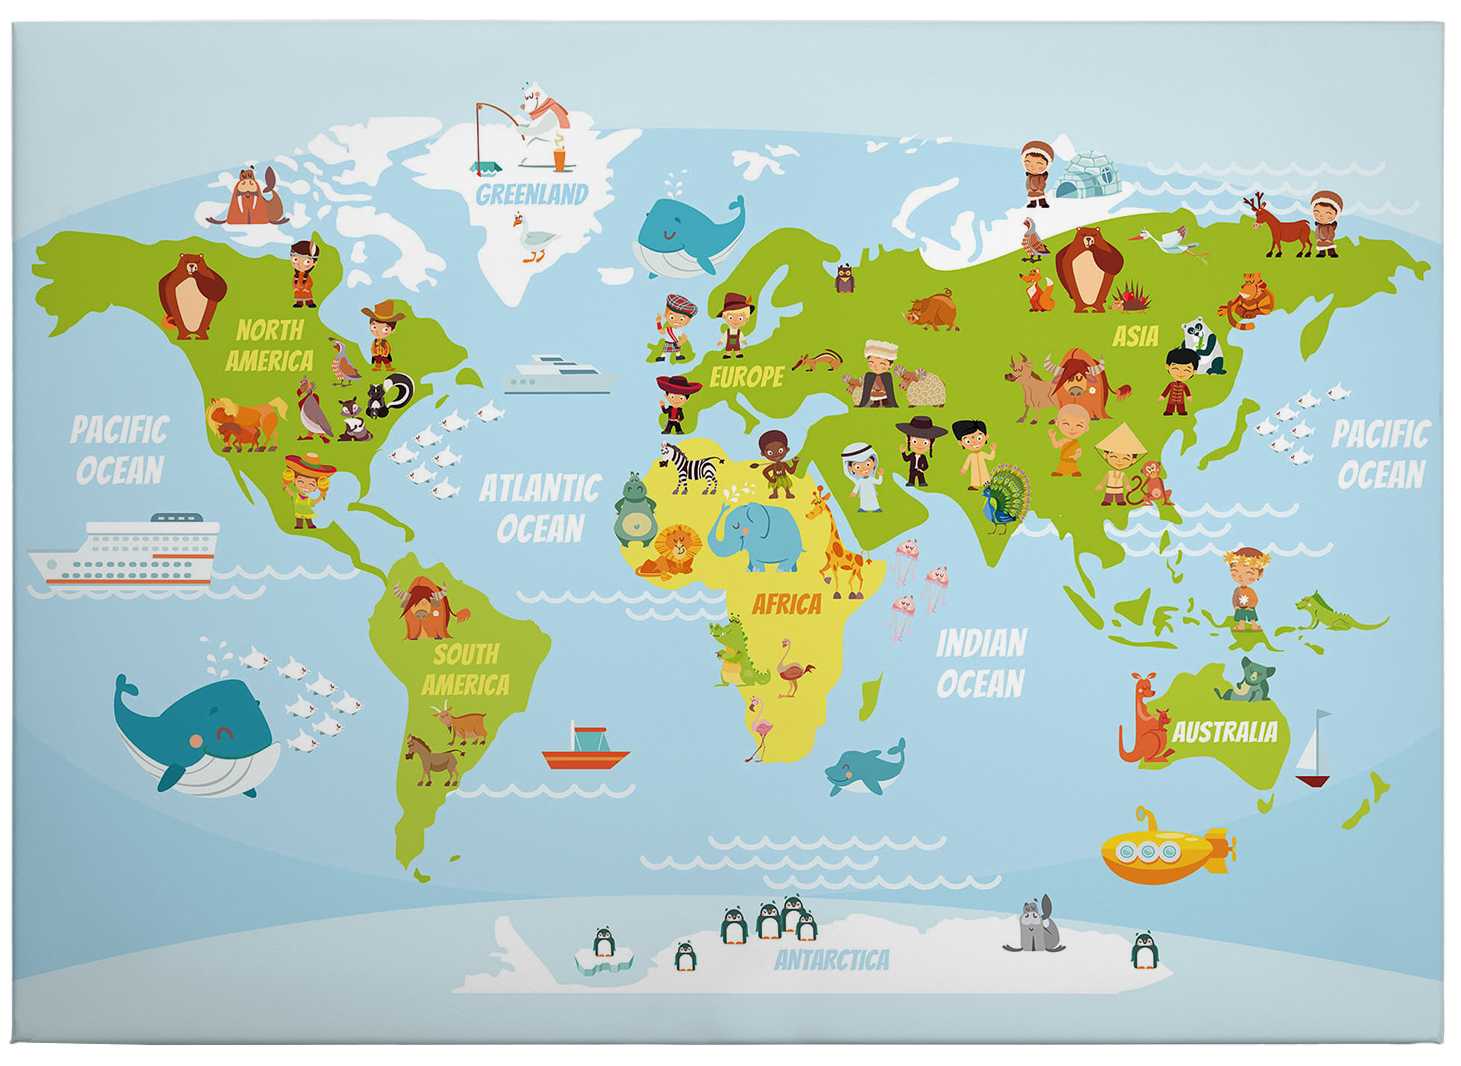             Quadro su tela con mappa del mondo con animali e persone - 0,70 m x 0,50 m
        